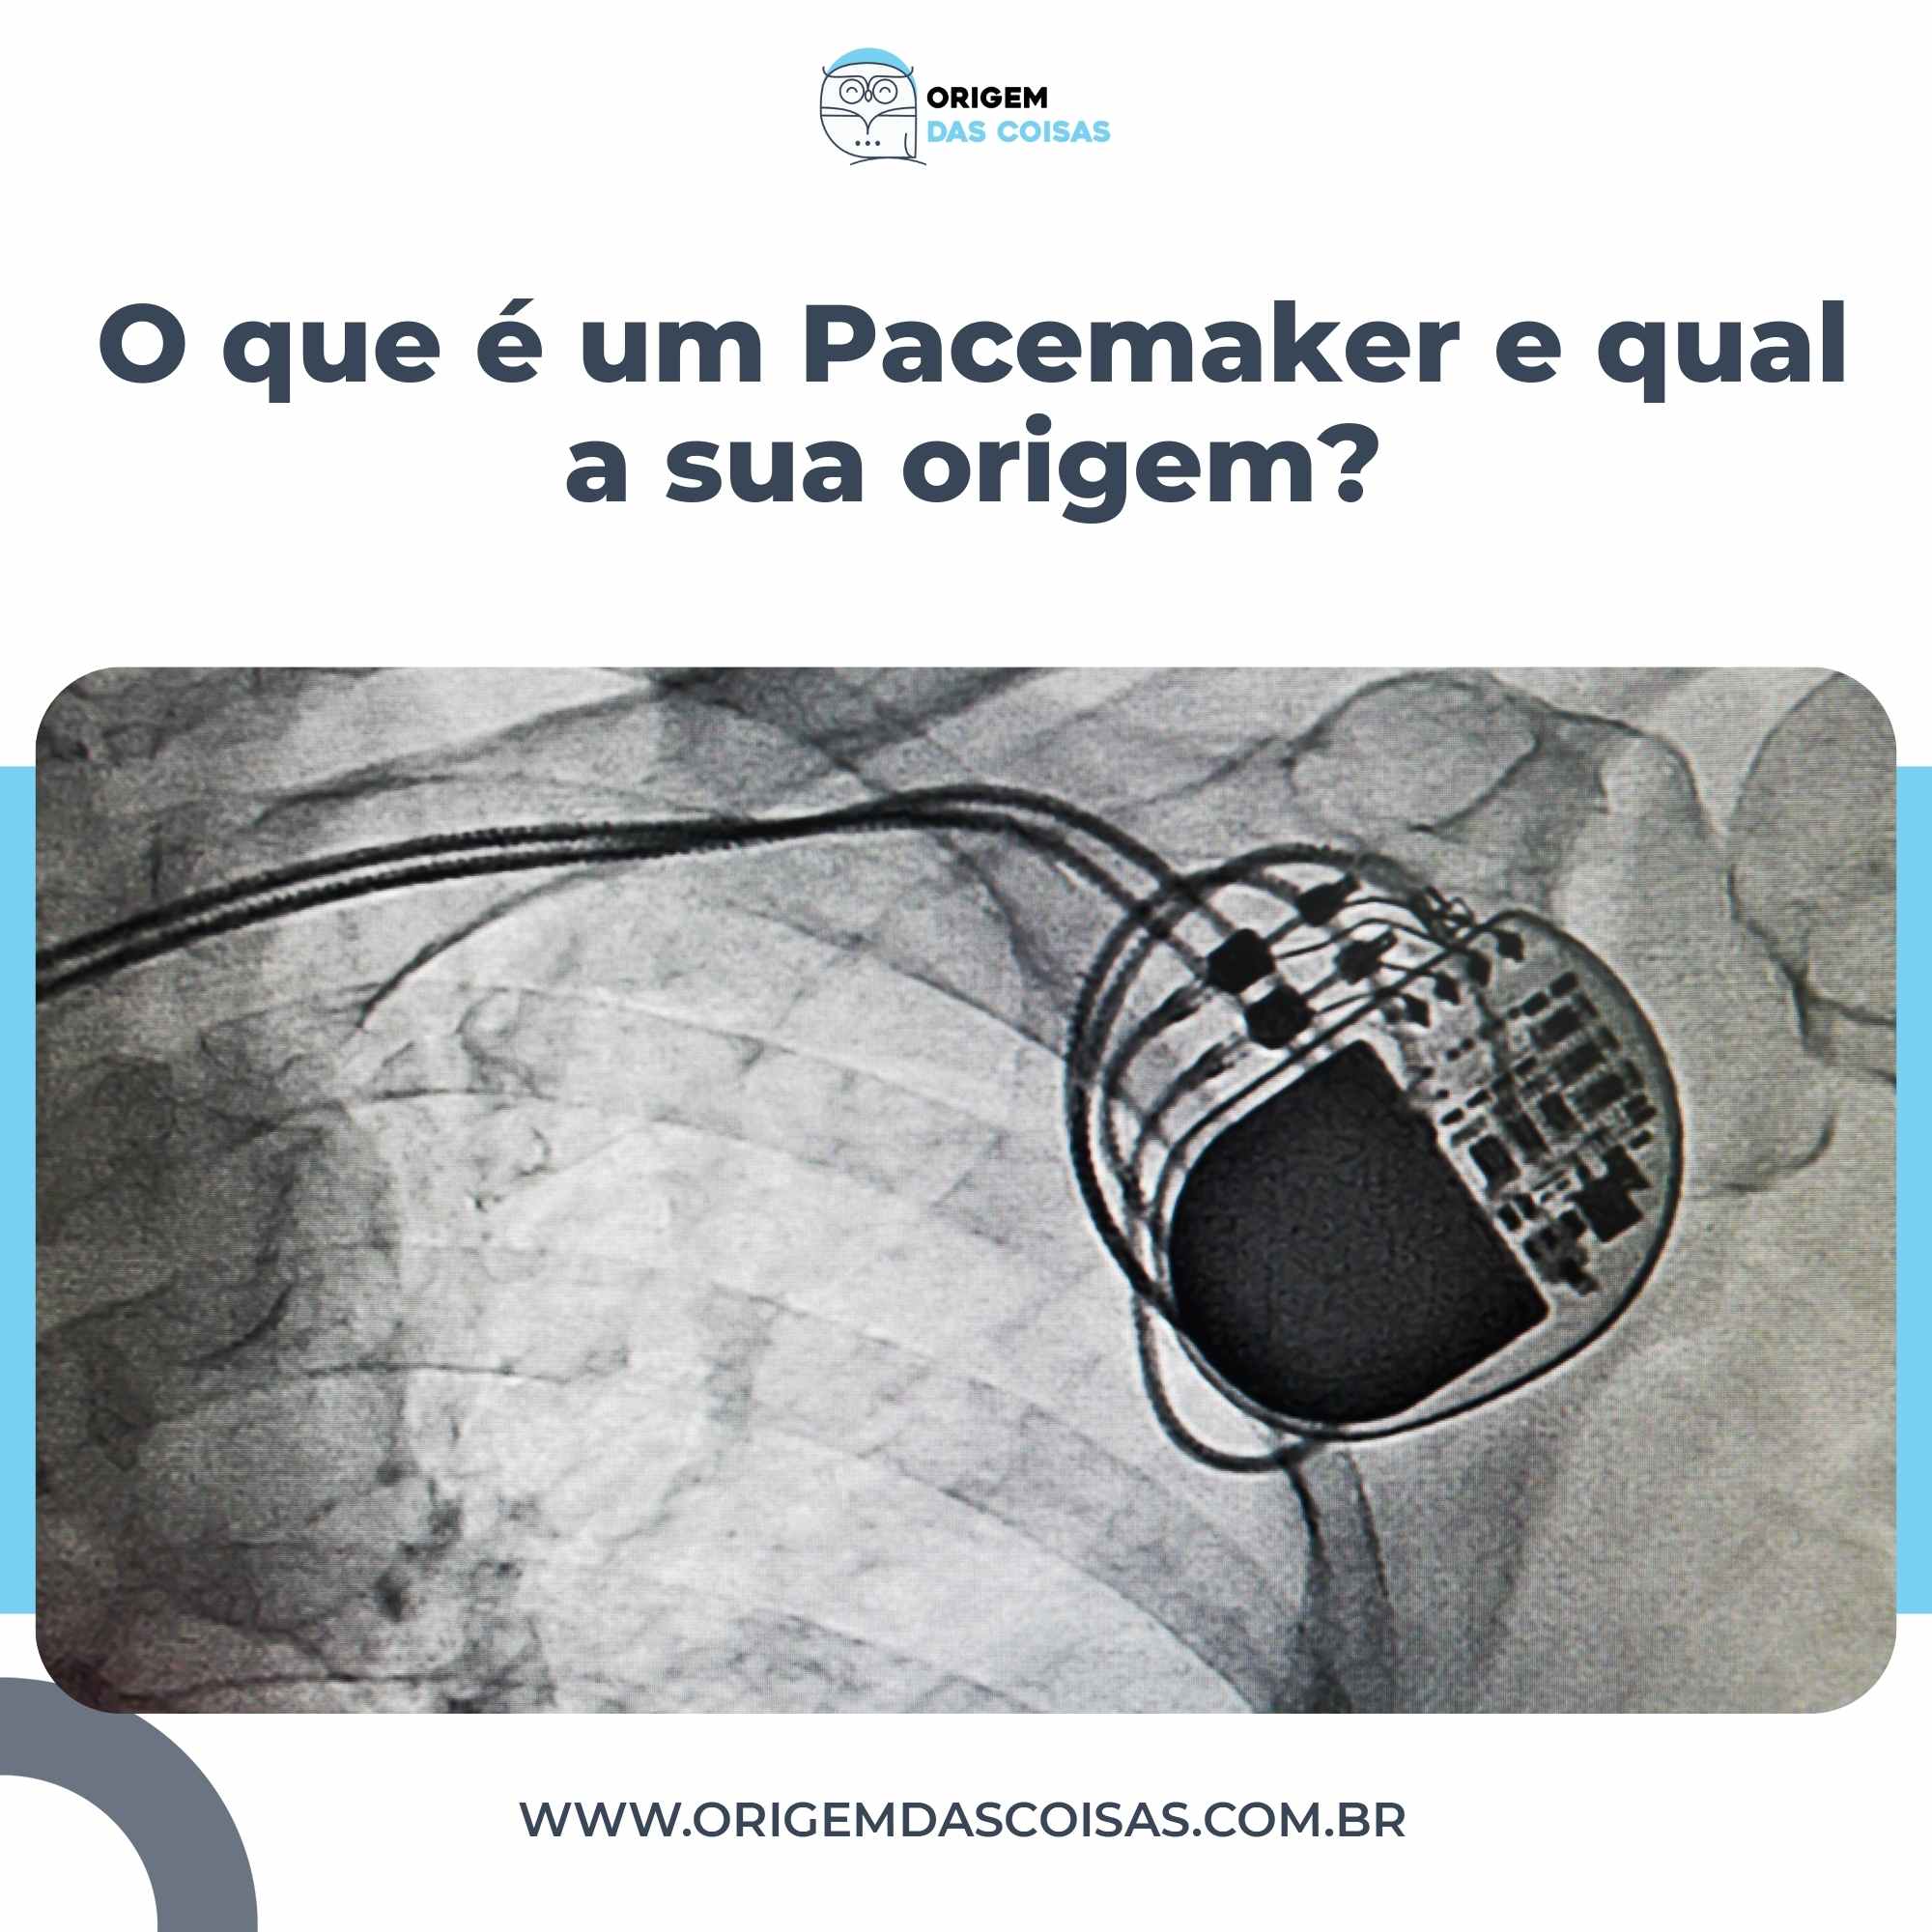 O que é um Pacemaker e qual a sua origem?